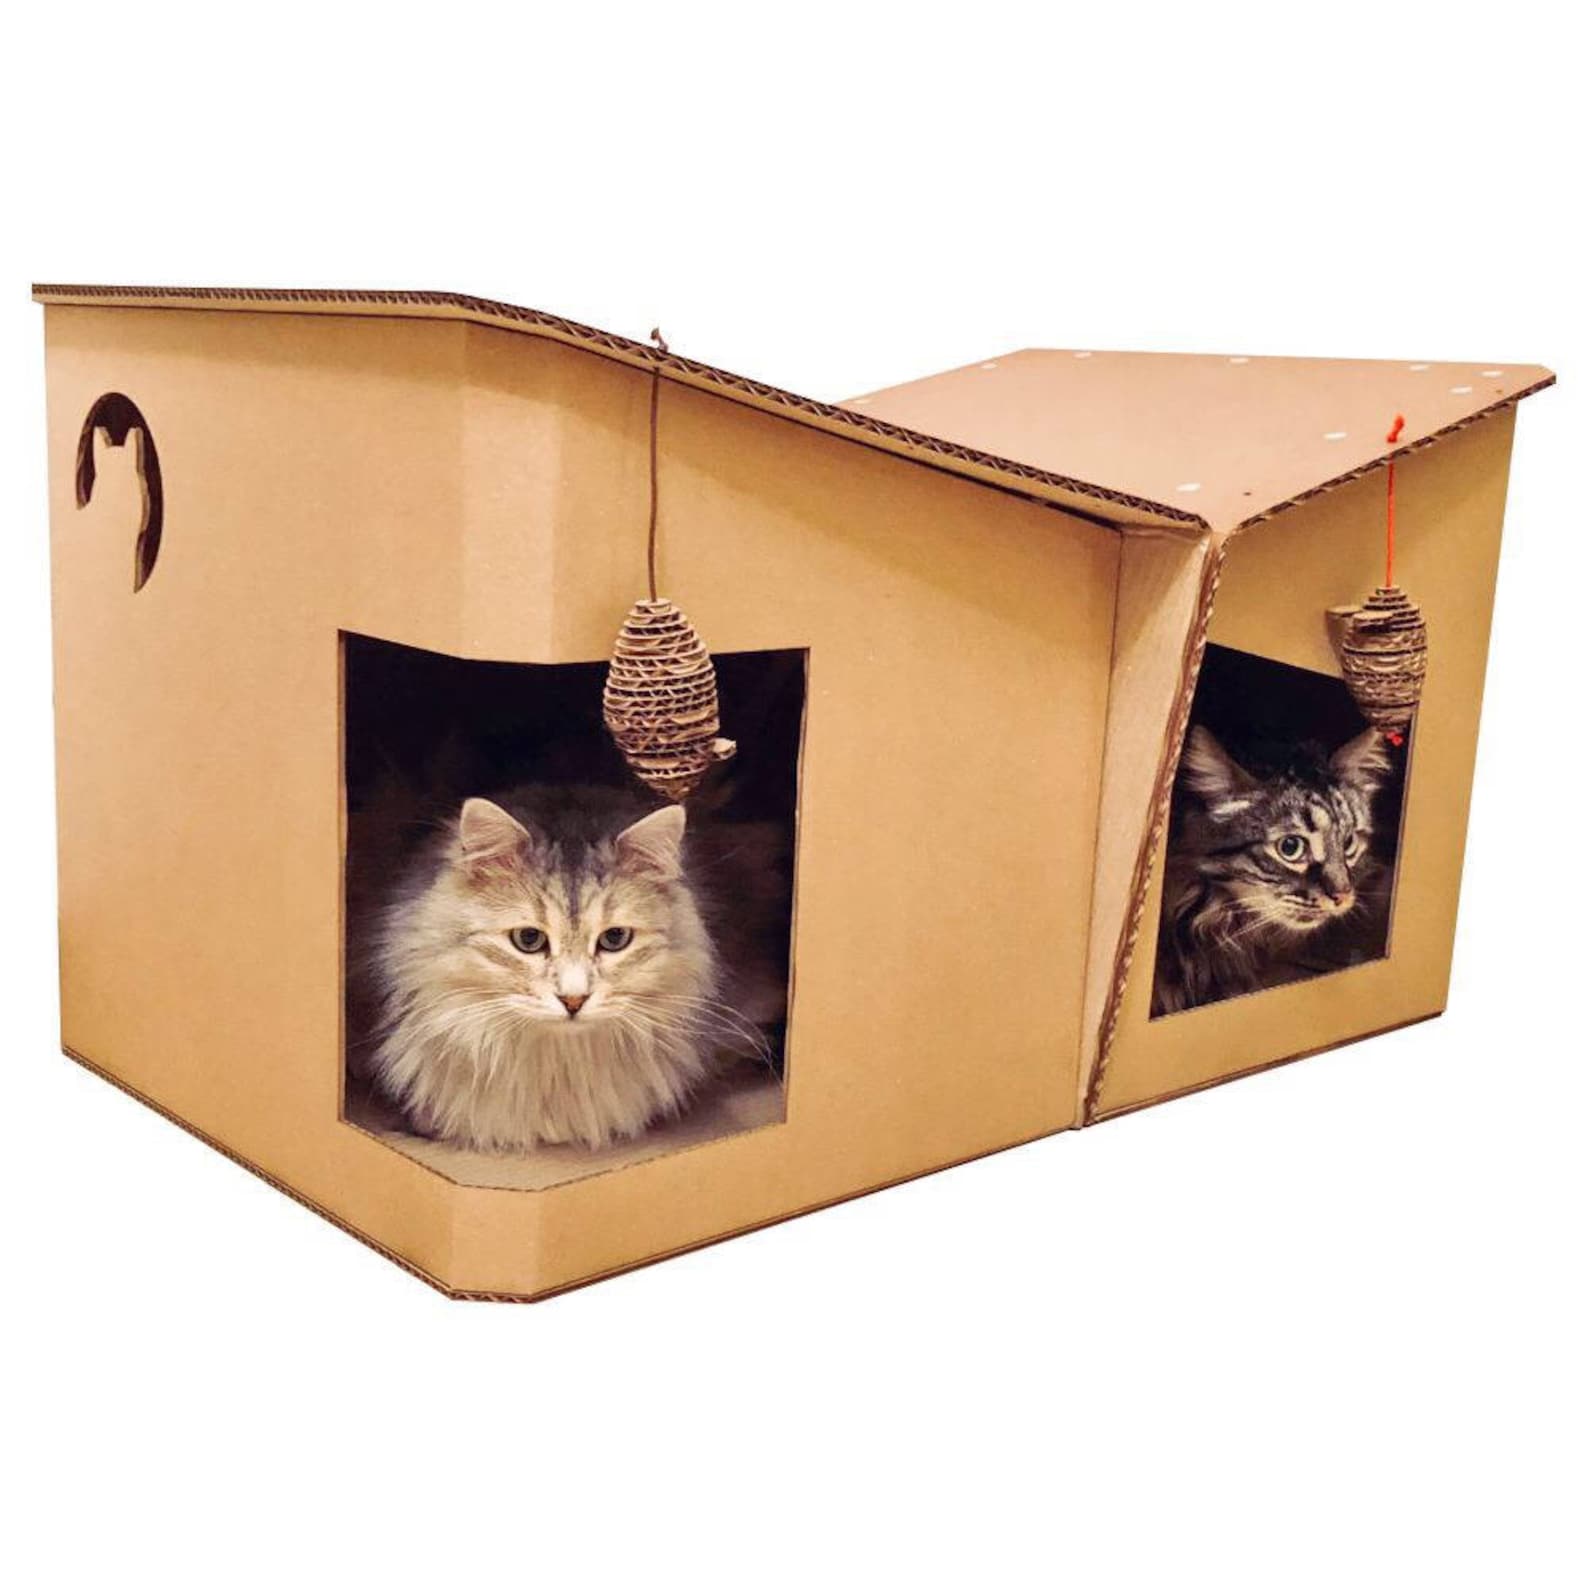 Картон кэт. Коробка для кота. Картонные изделия для кошек. Картонная мебель для кошек. Мебель кошка картон.